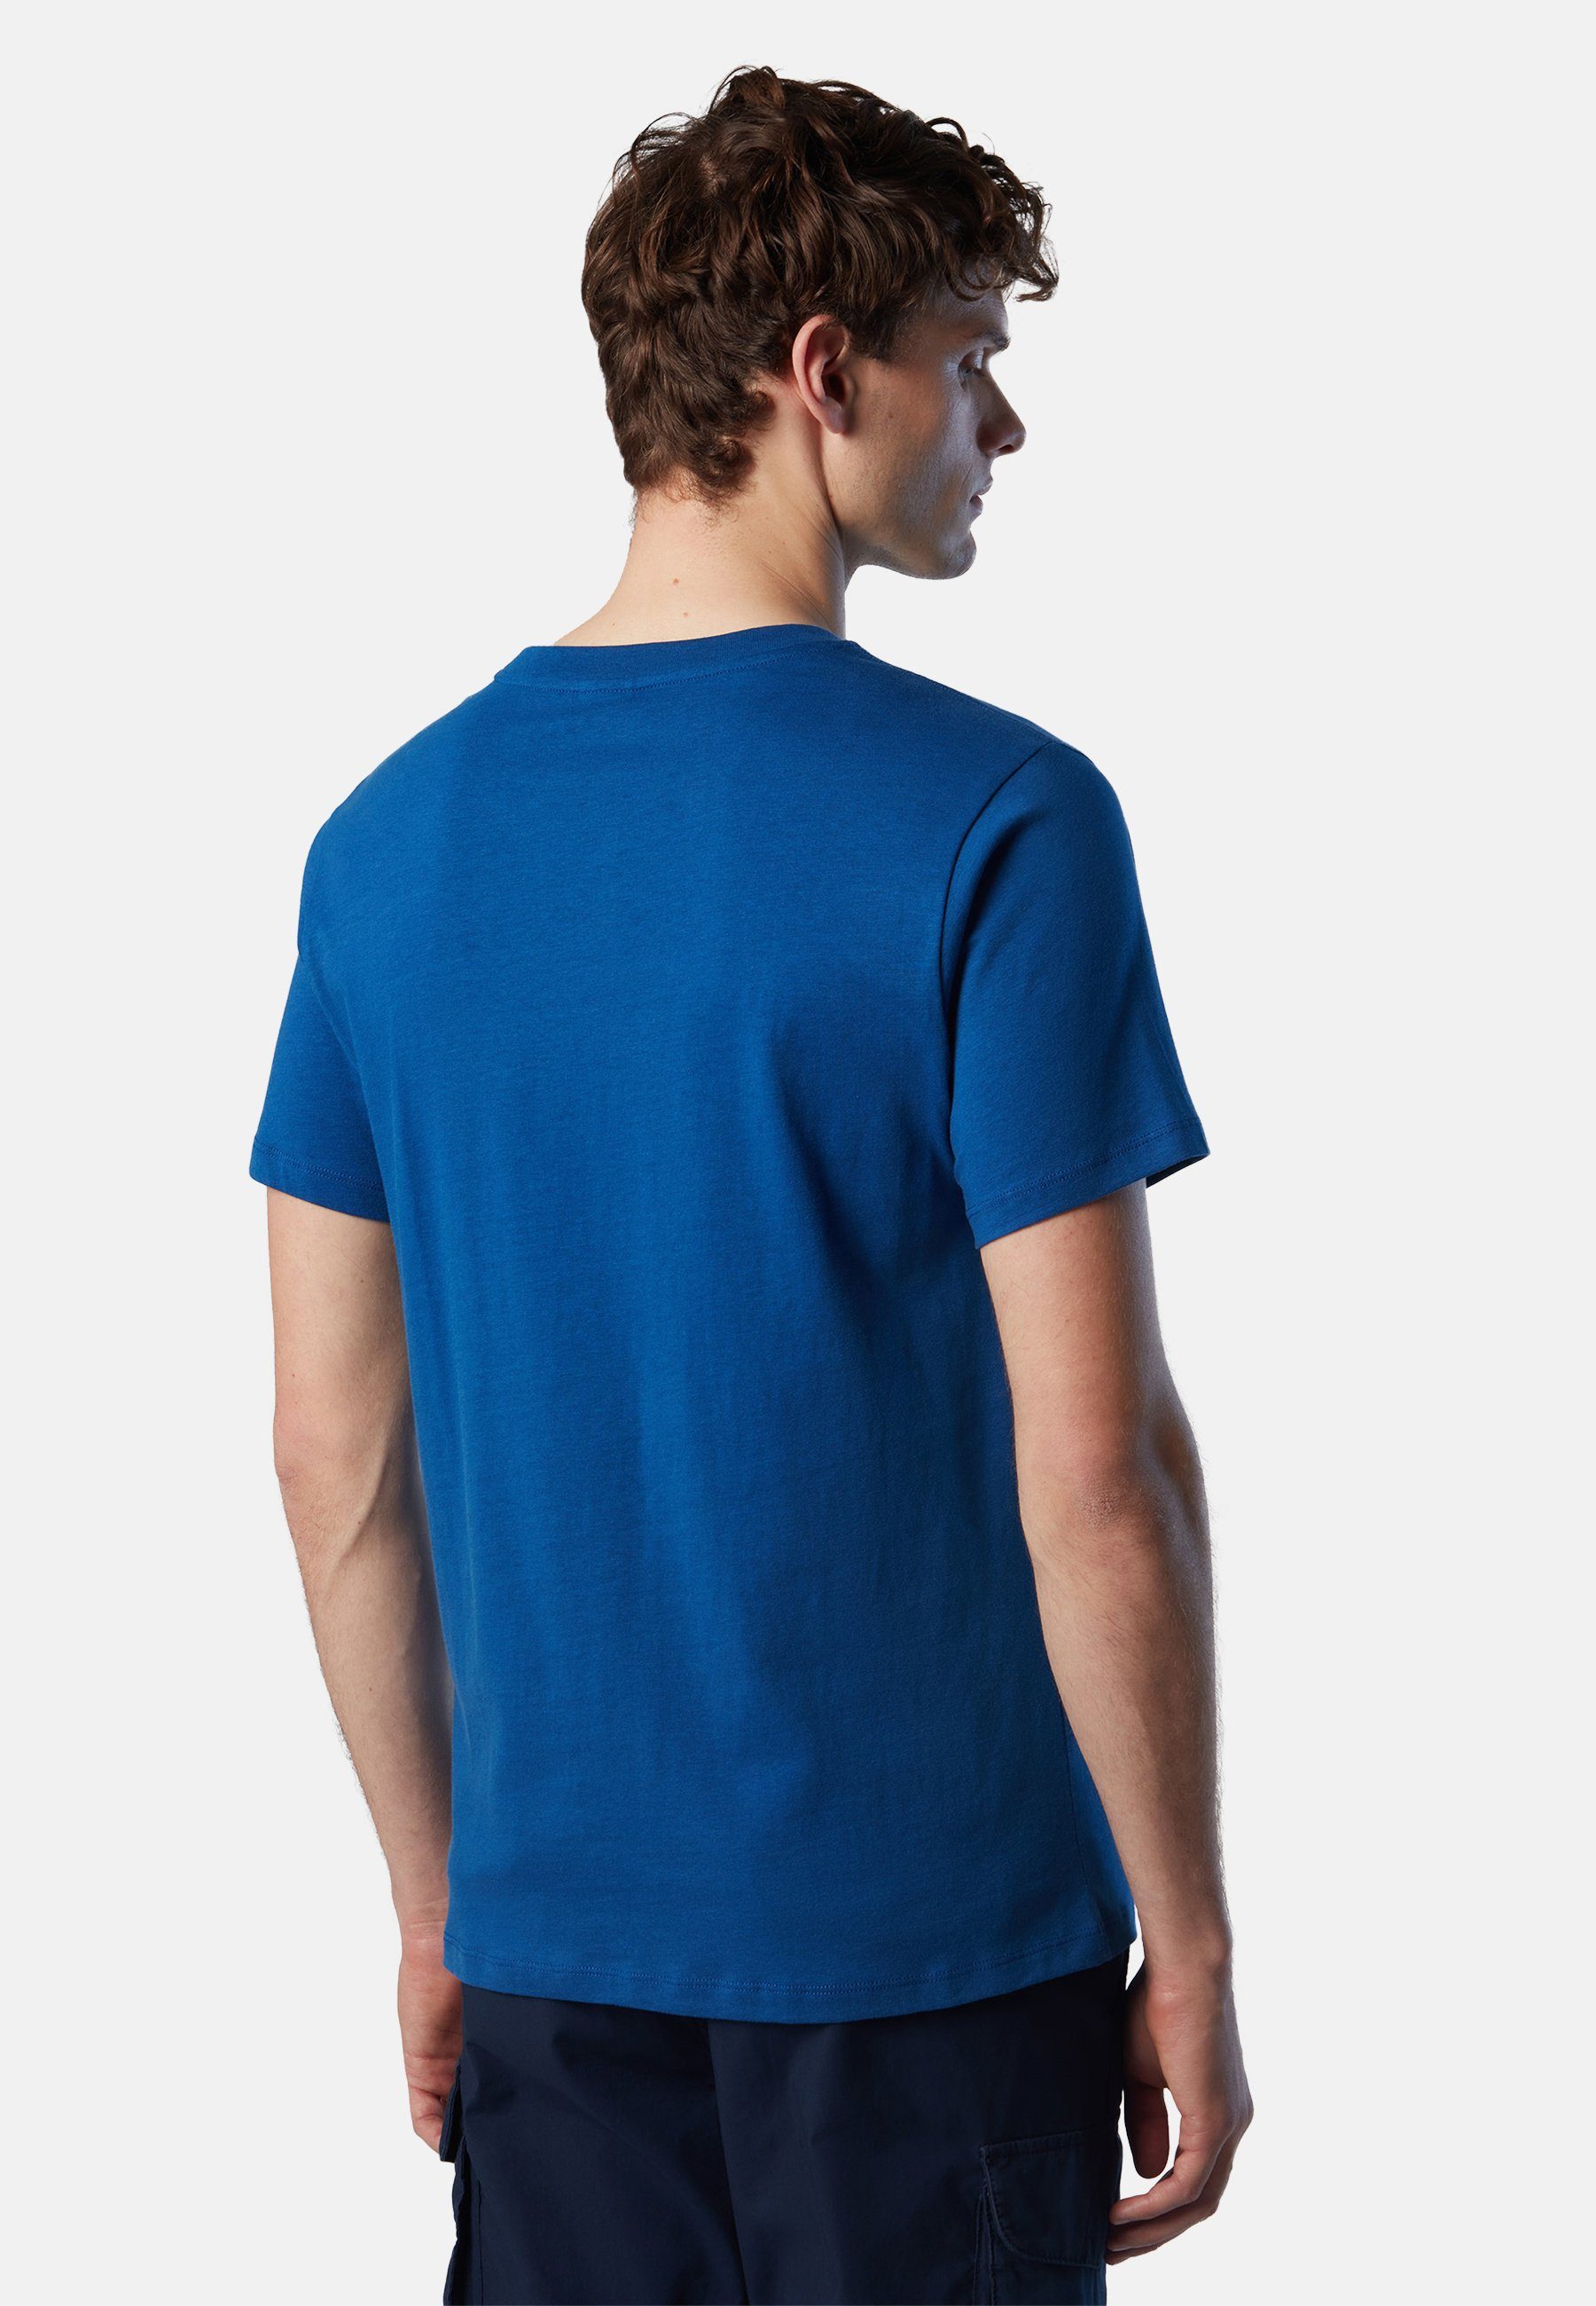 mit BLUE mit T-Shirt klassischem Sails North BRIGHT Maxi-Logo-Aufdruck T-Shirt Design